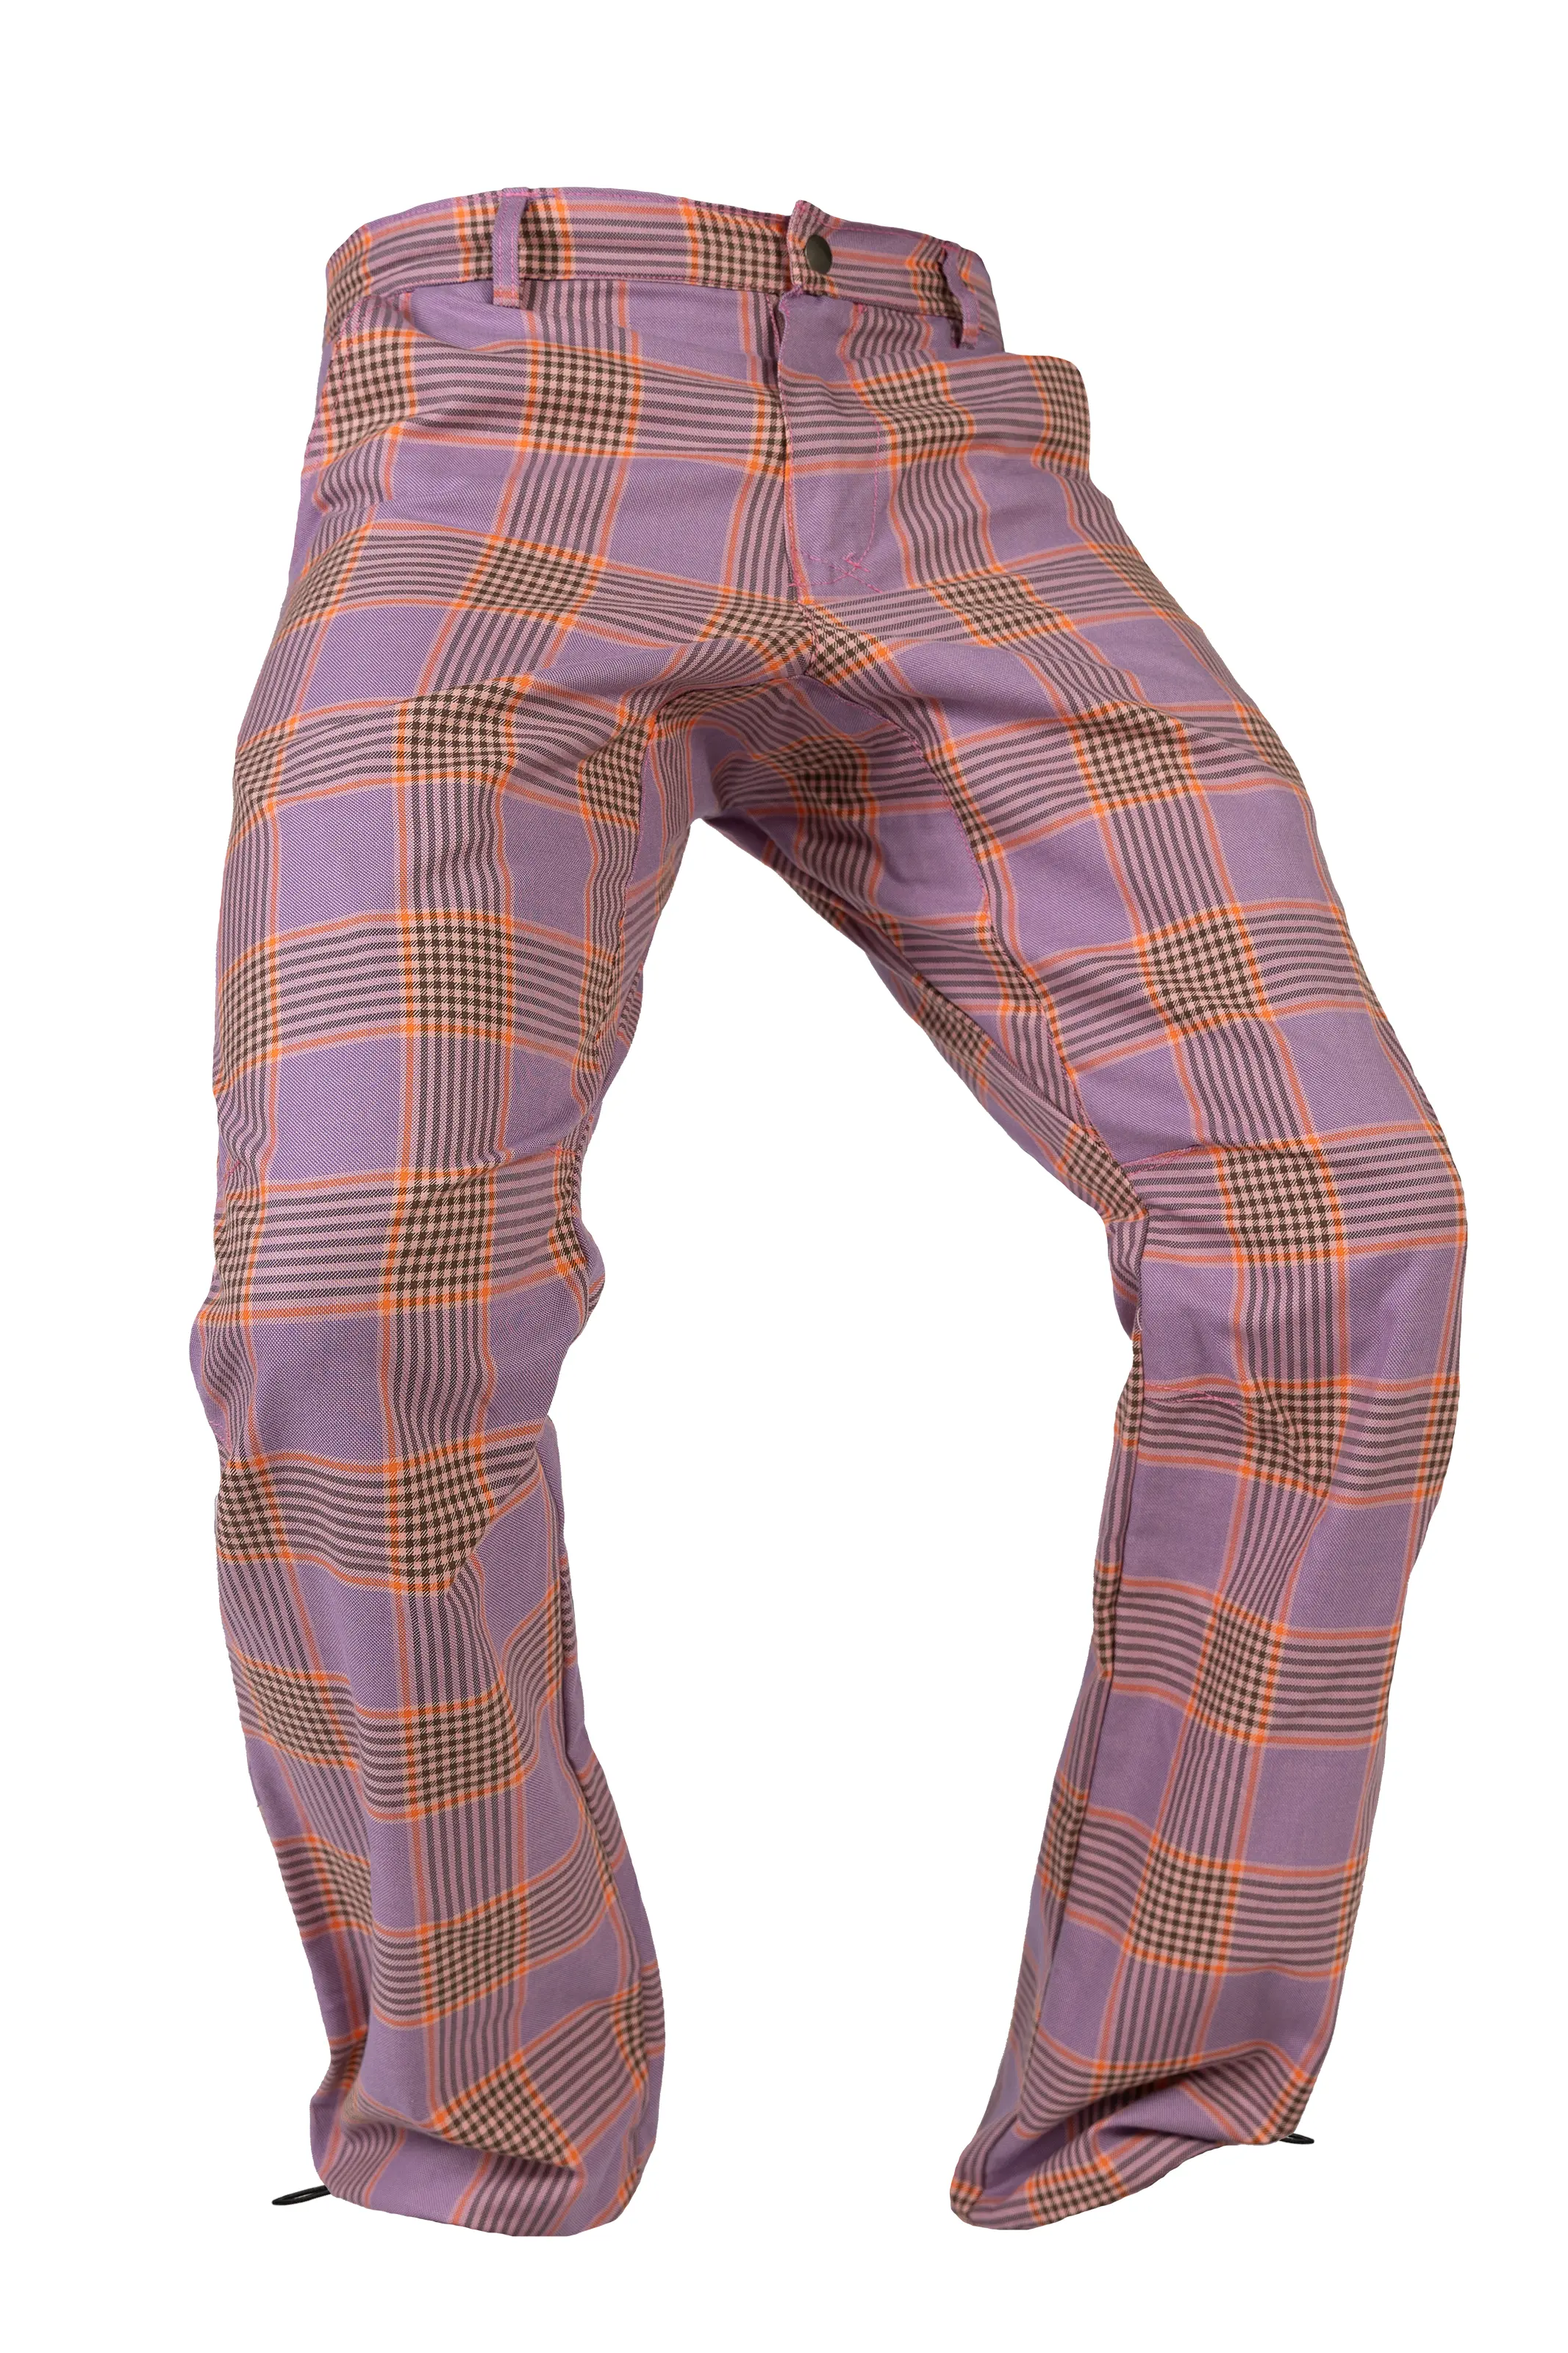 Pantalone sportivo uomo a quadri - rosa-arancione-nero - BILLY 2 Monvic